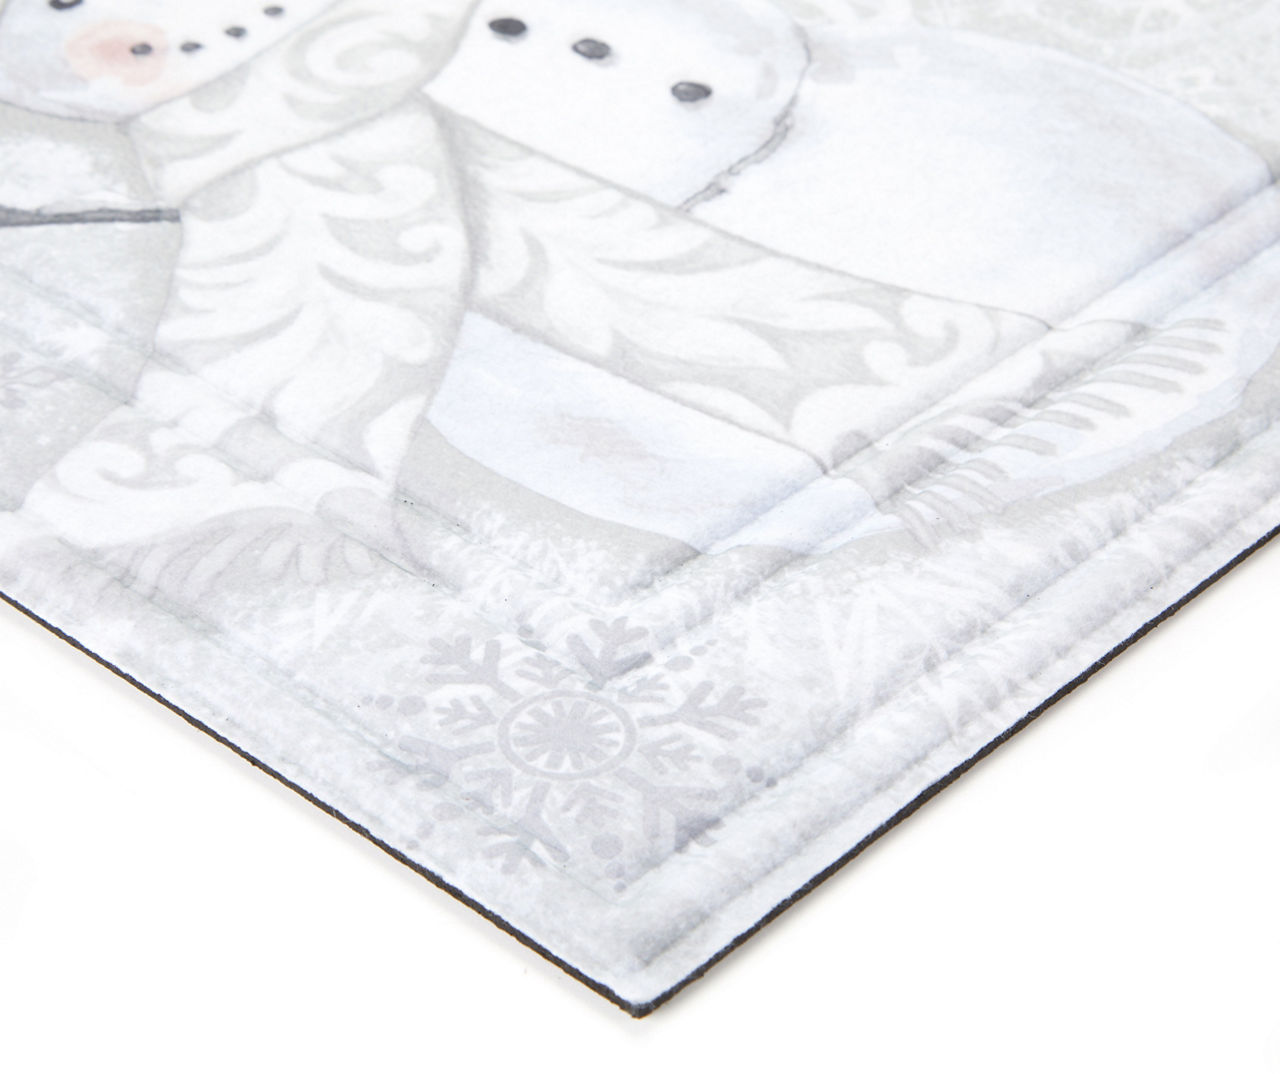 Let it Snow Doormat - Snowman Doormat - Winter Decor